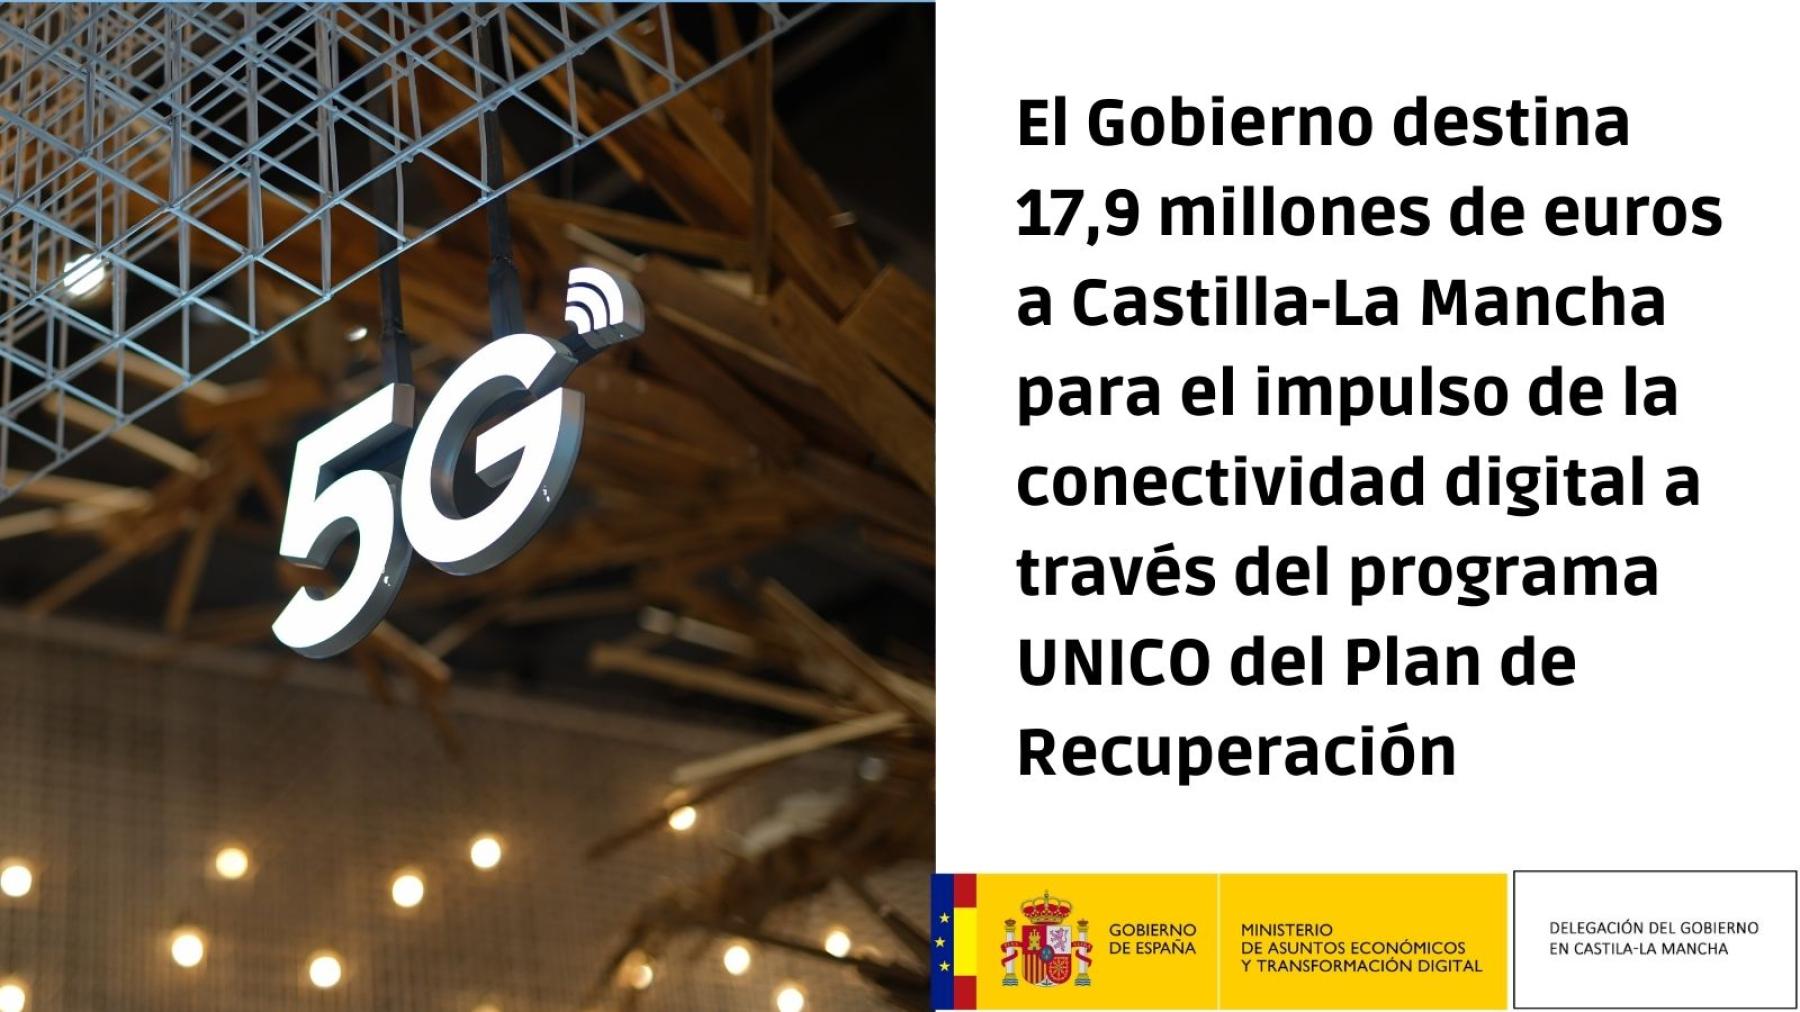 El Gobierno destina 17,9 millones de euros a <br/>Castilla-La Mancha para el impulso de la <br/>conectividad digital a través del programa UNICO <br/>del Plan de Recuperación